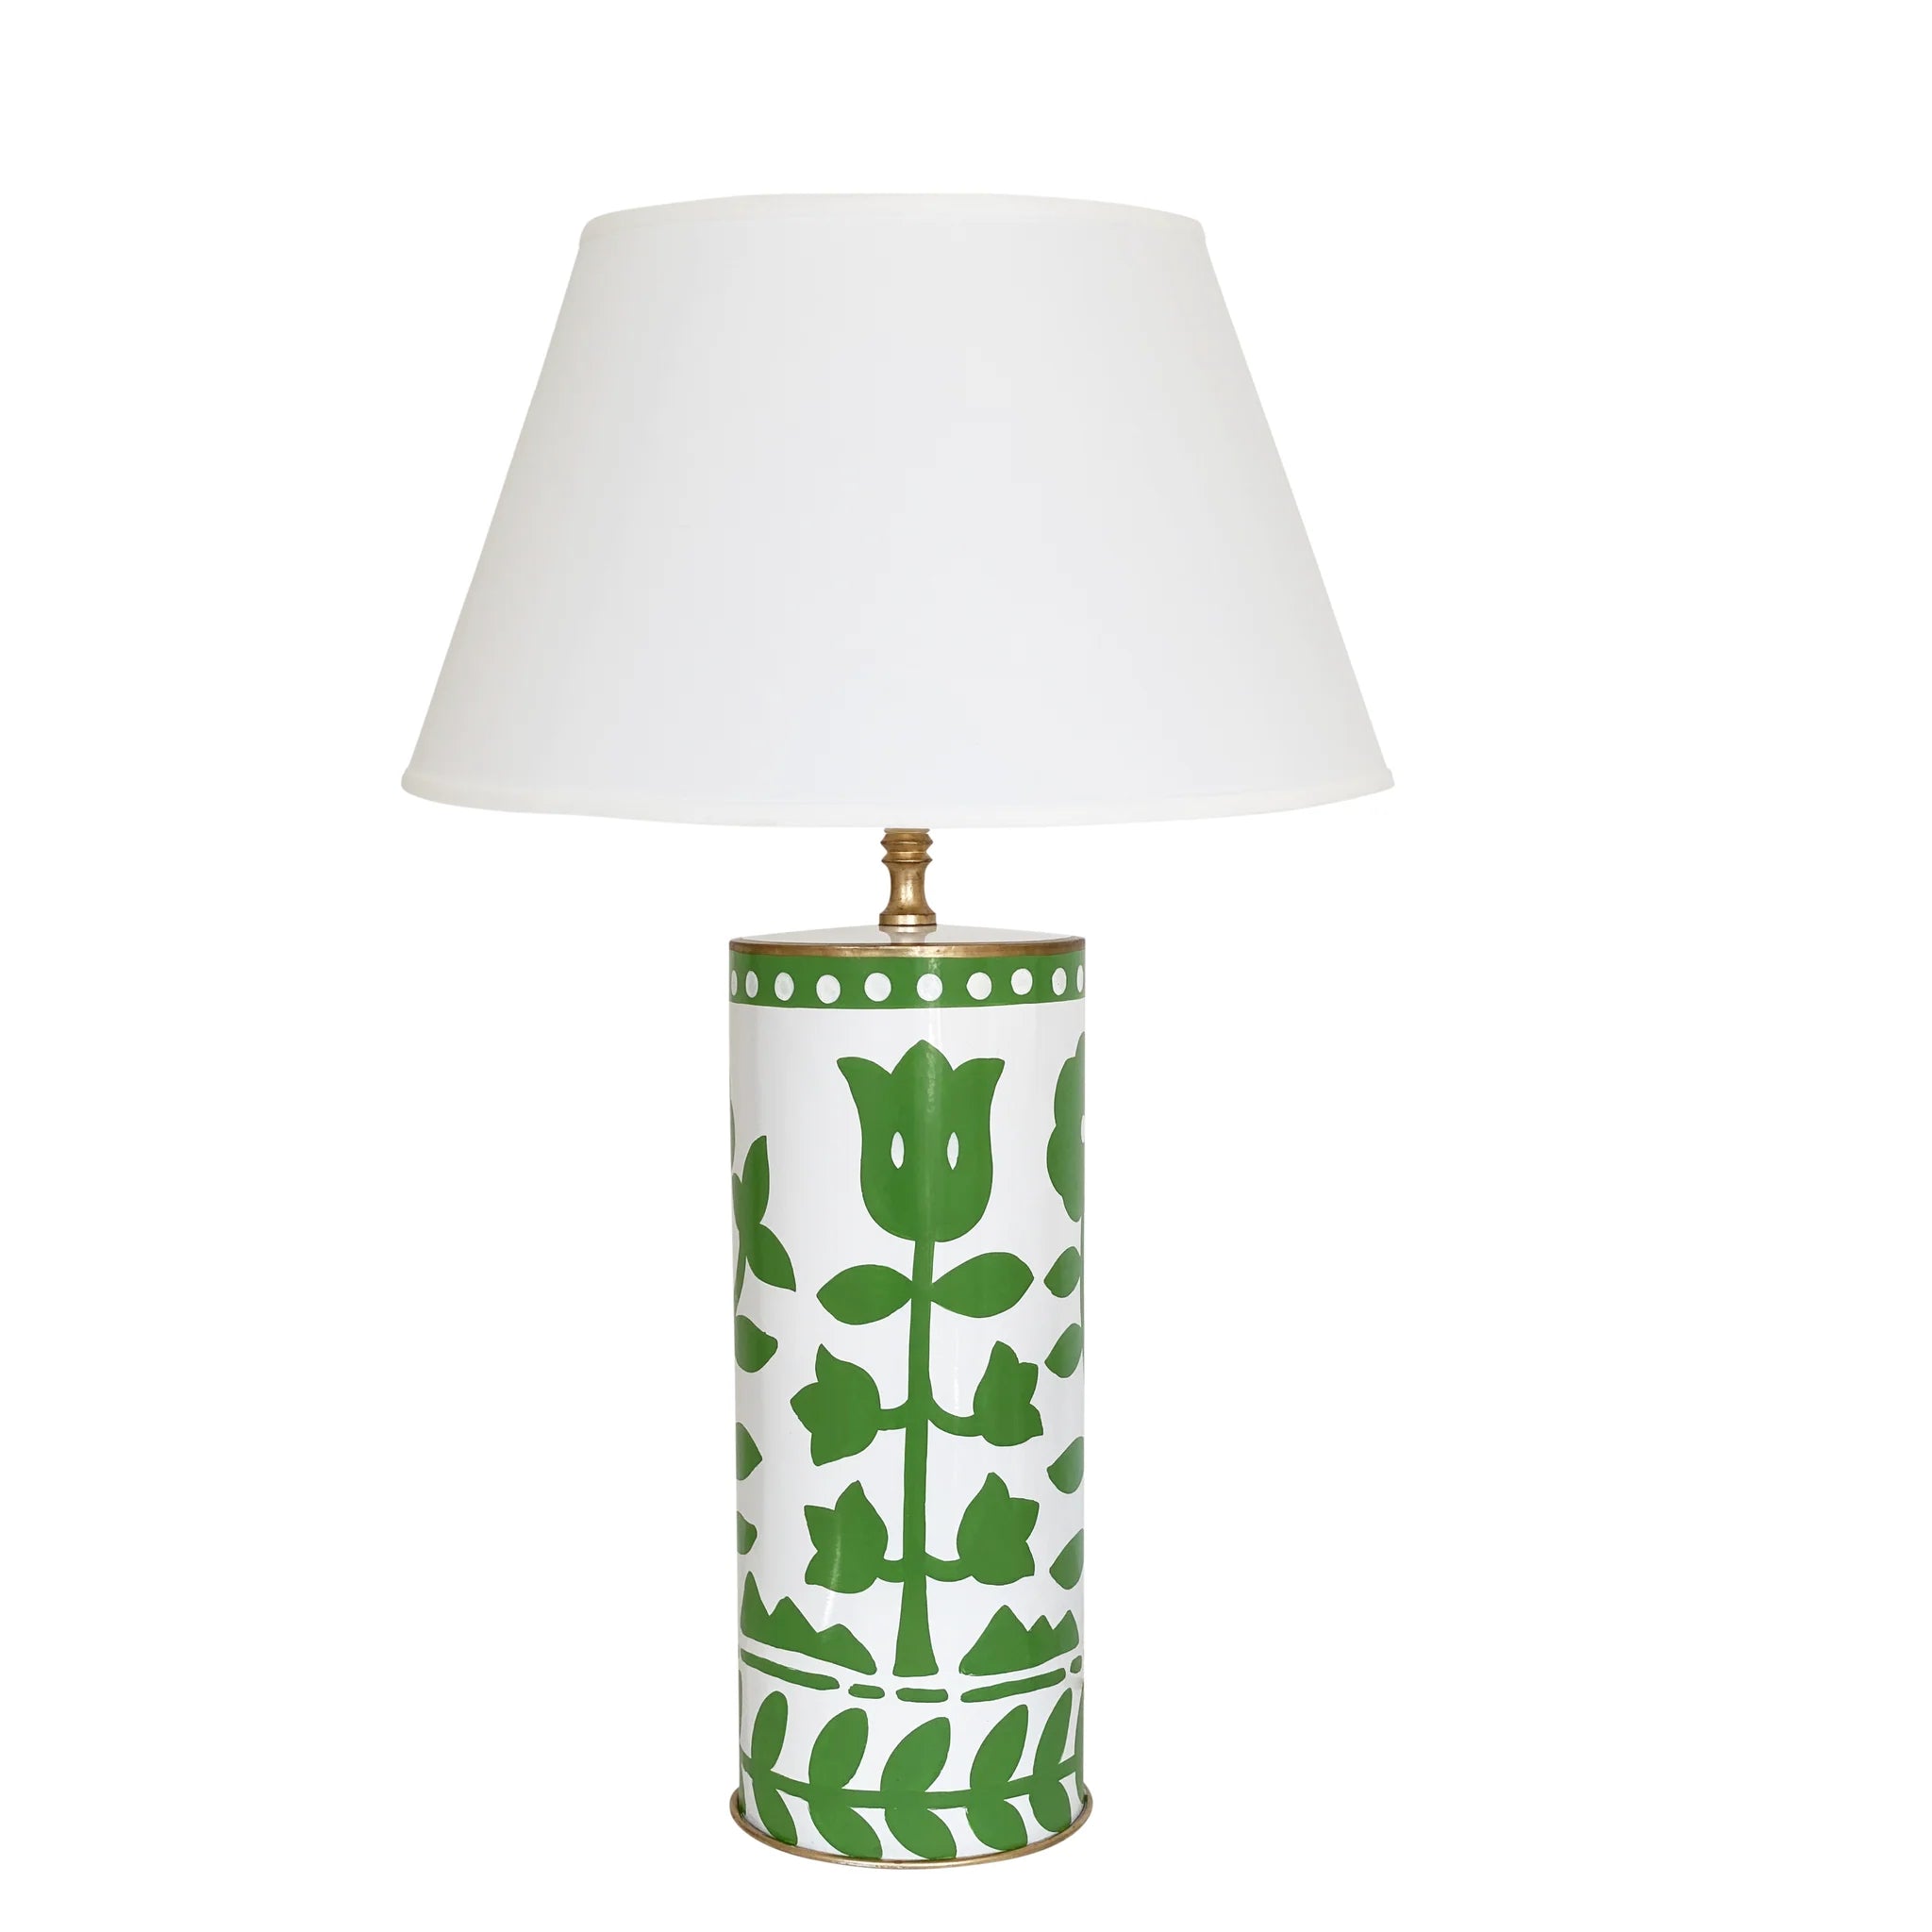 Dana Gibson's Bertrams Lamp in Green